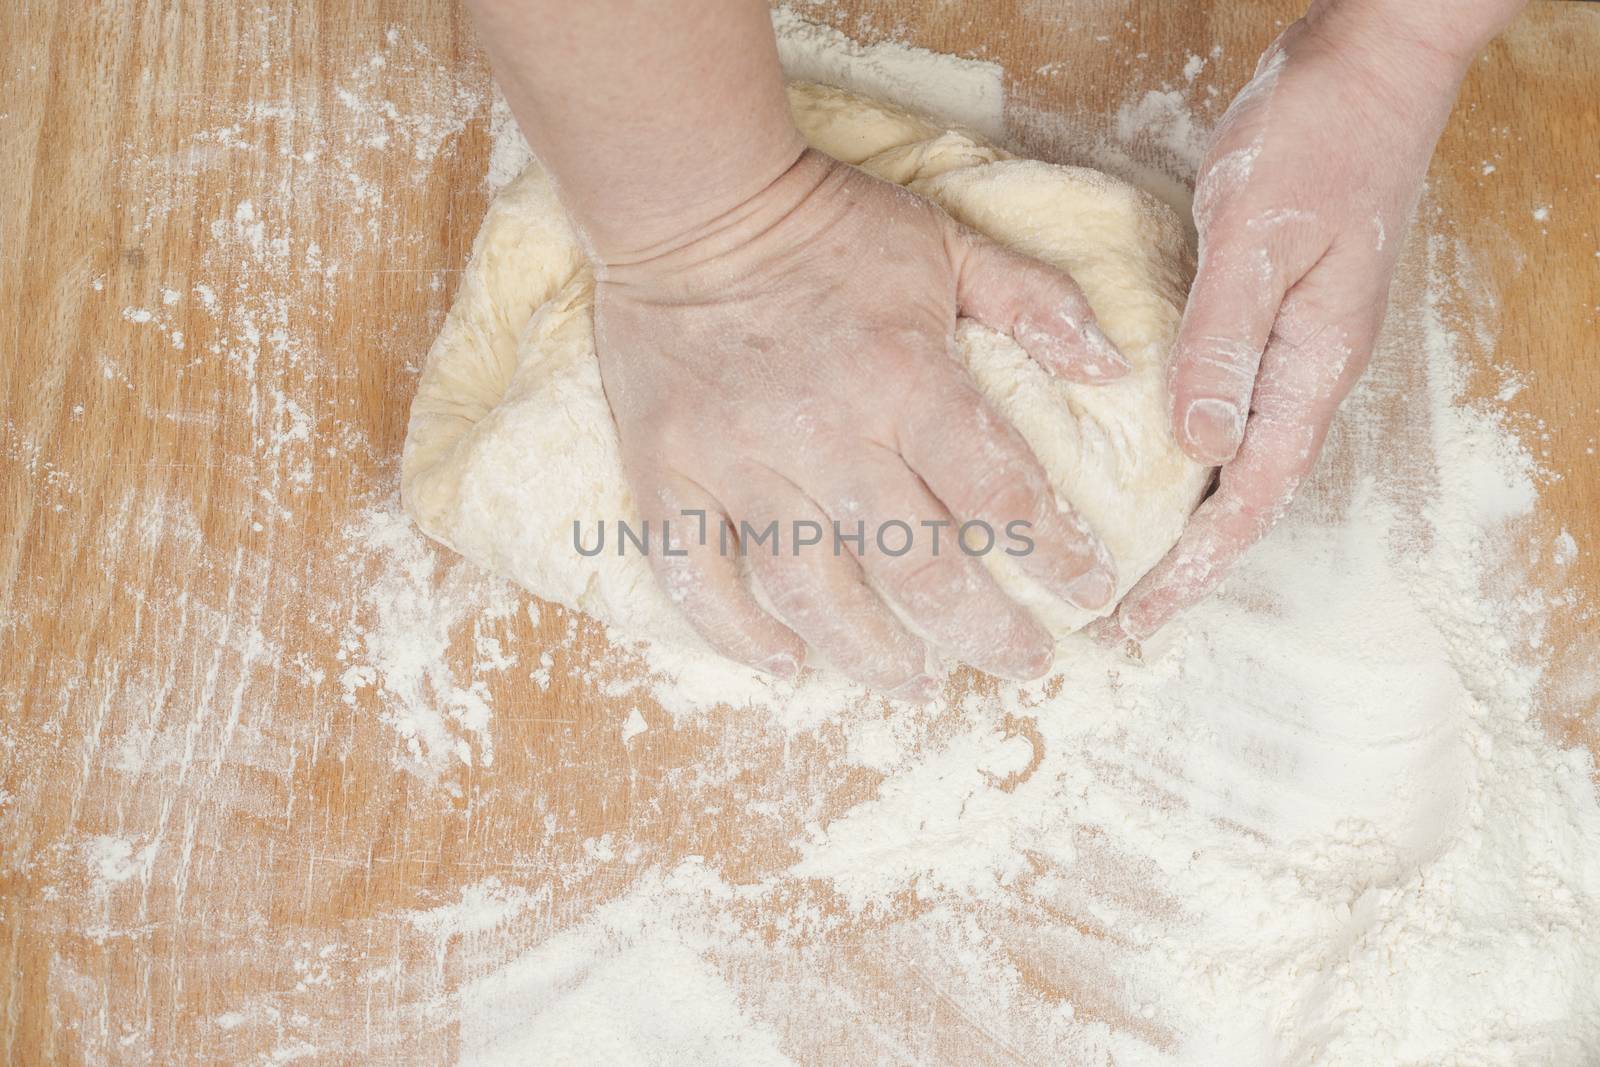 Women's hands preparing fresh yeast dough by kozak